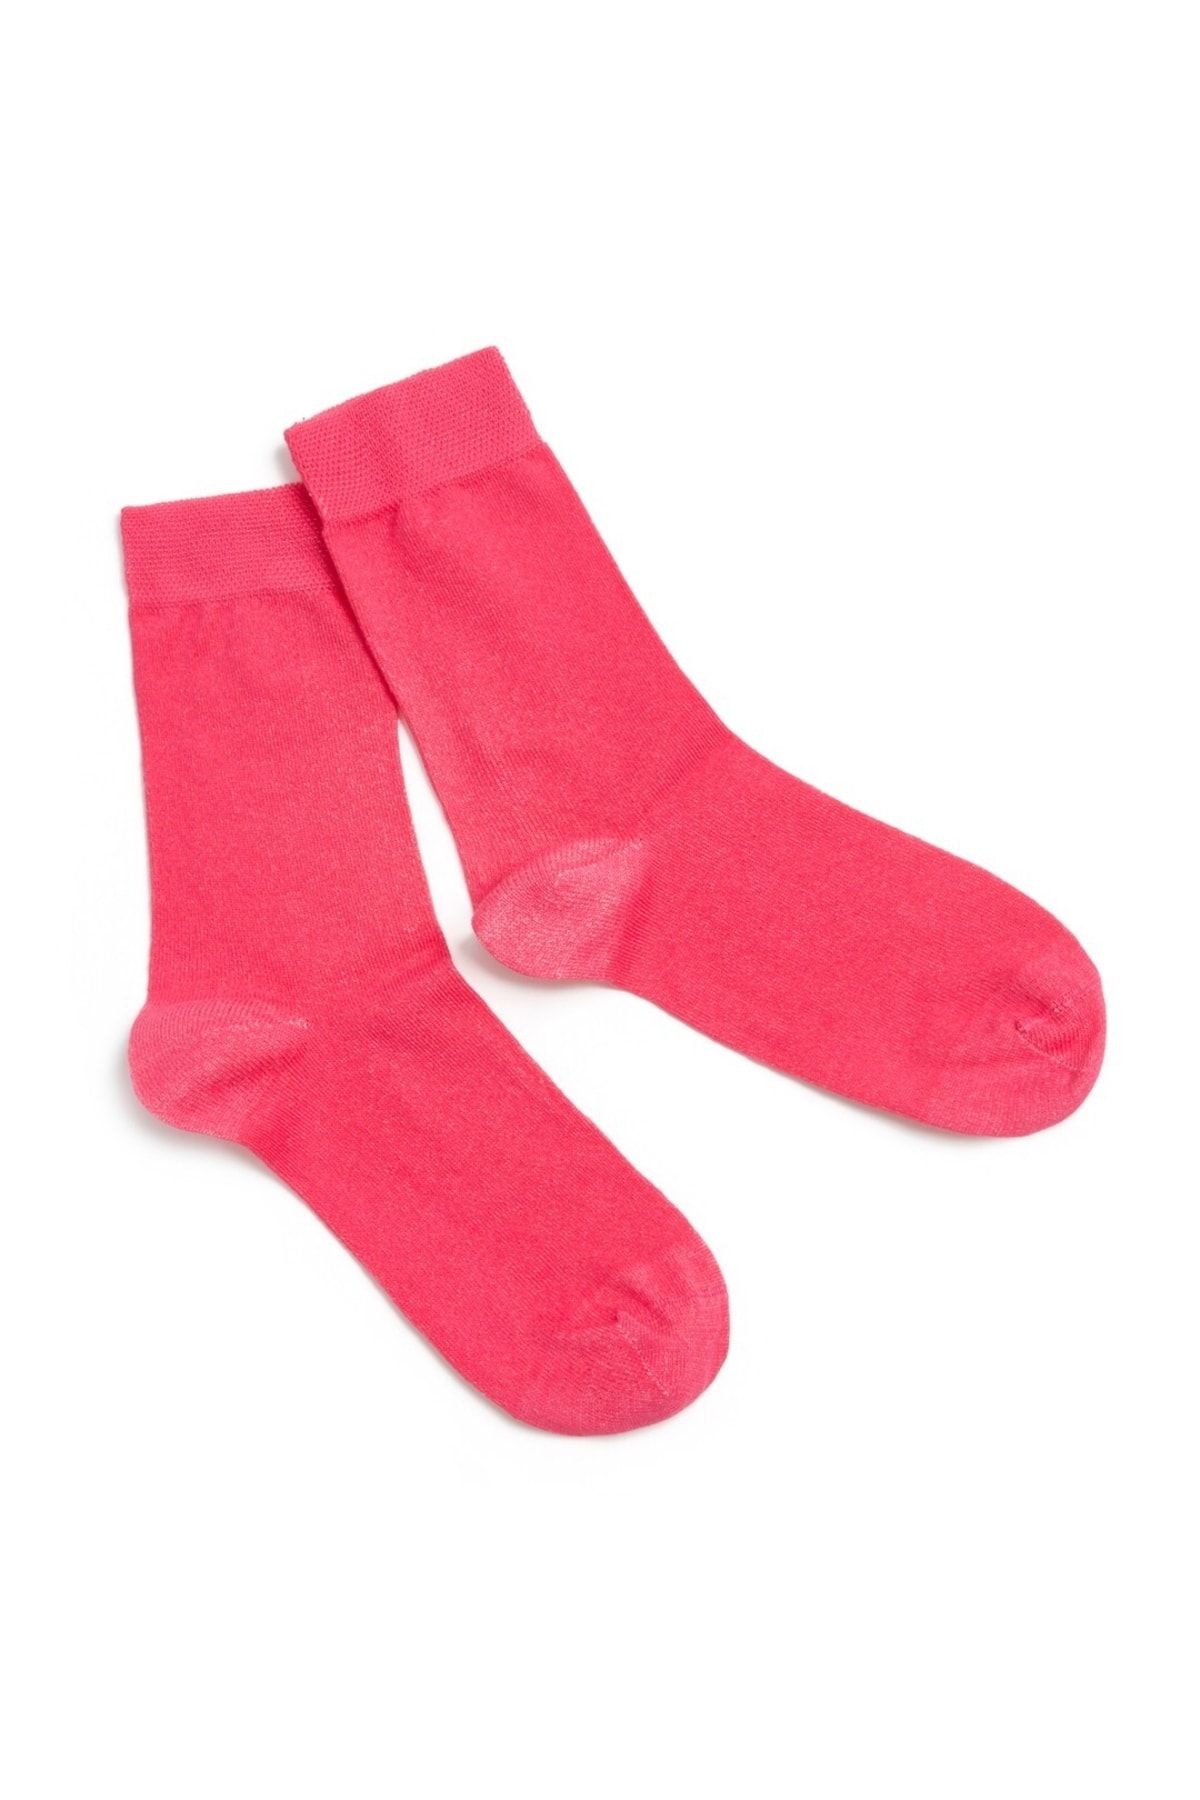 oopssocks Pamuklu Renkli Soket Çorap